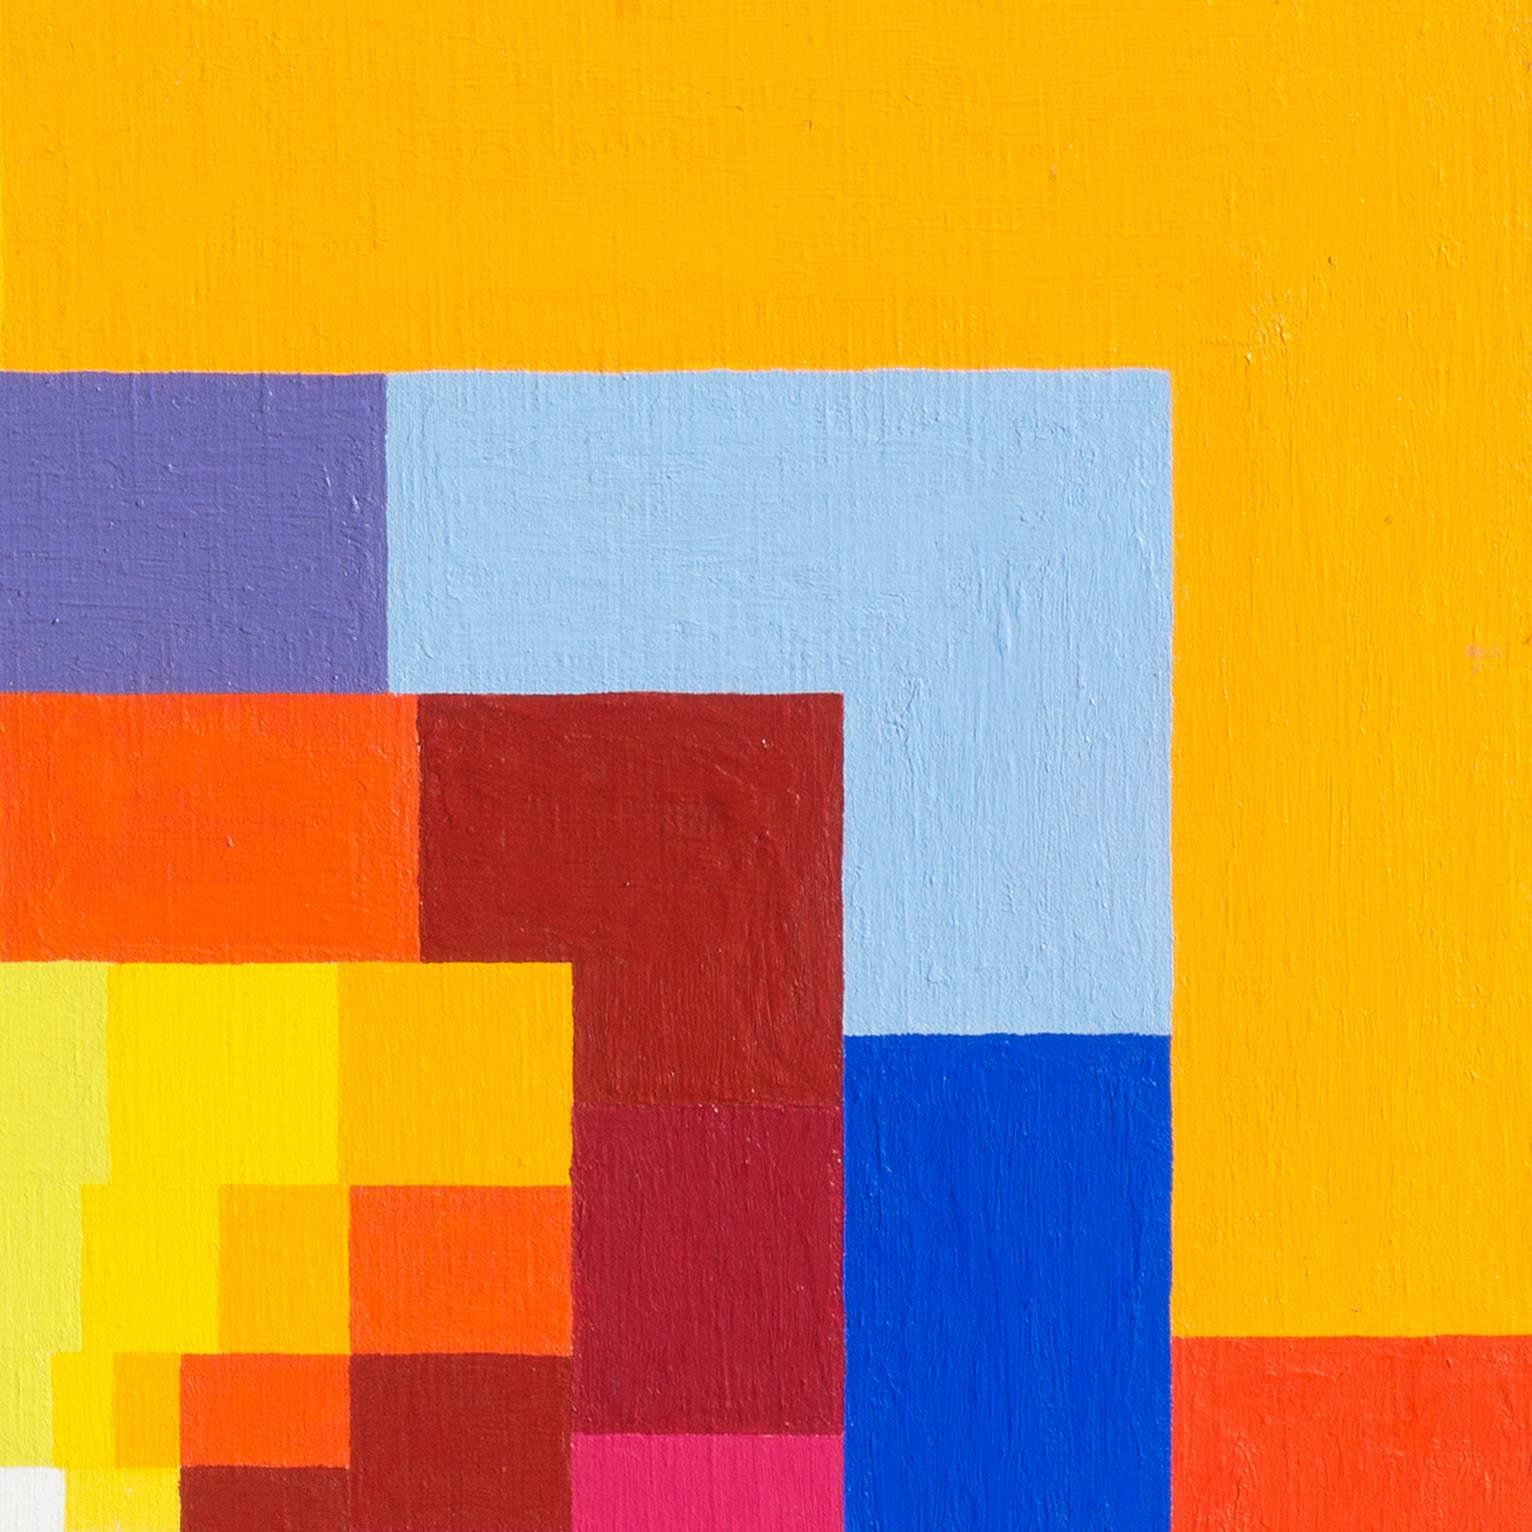 Ein bedeutendes abstraktes Ölgemälde der Amerikanischen Schule mit konzentrischen rechteckigen Formen in einer Palette von Primär- und Sekundärfarben, die sich in geometrischer Harmonie zu einem elfenbeinfarbenen Zentrum entwickeln.  

Unsigniert